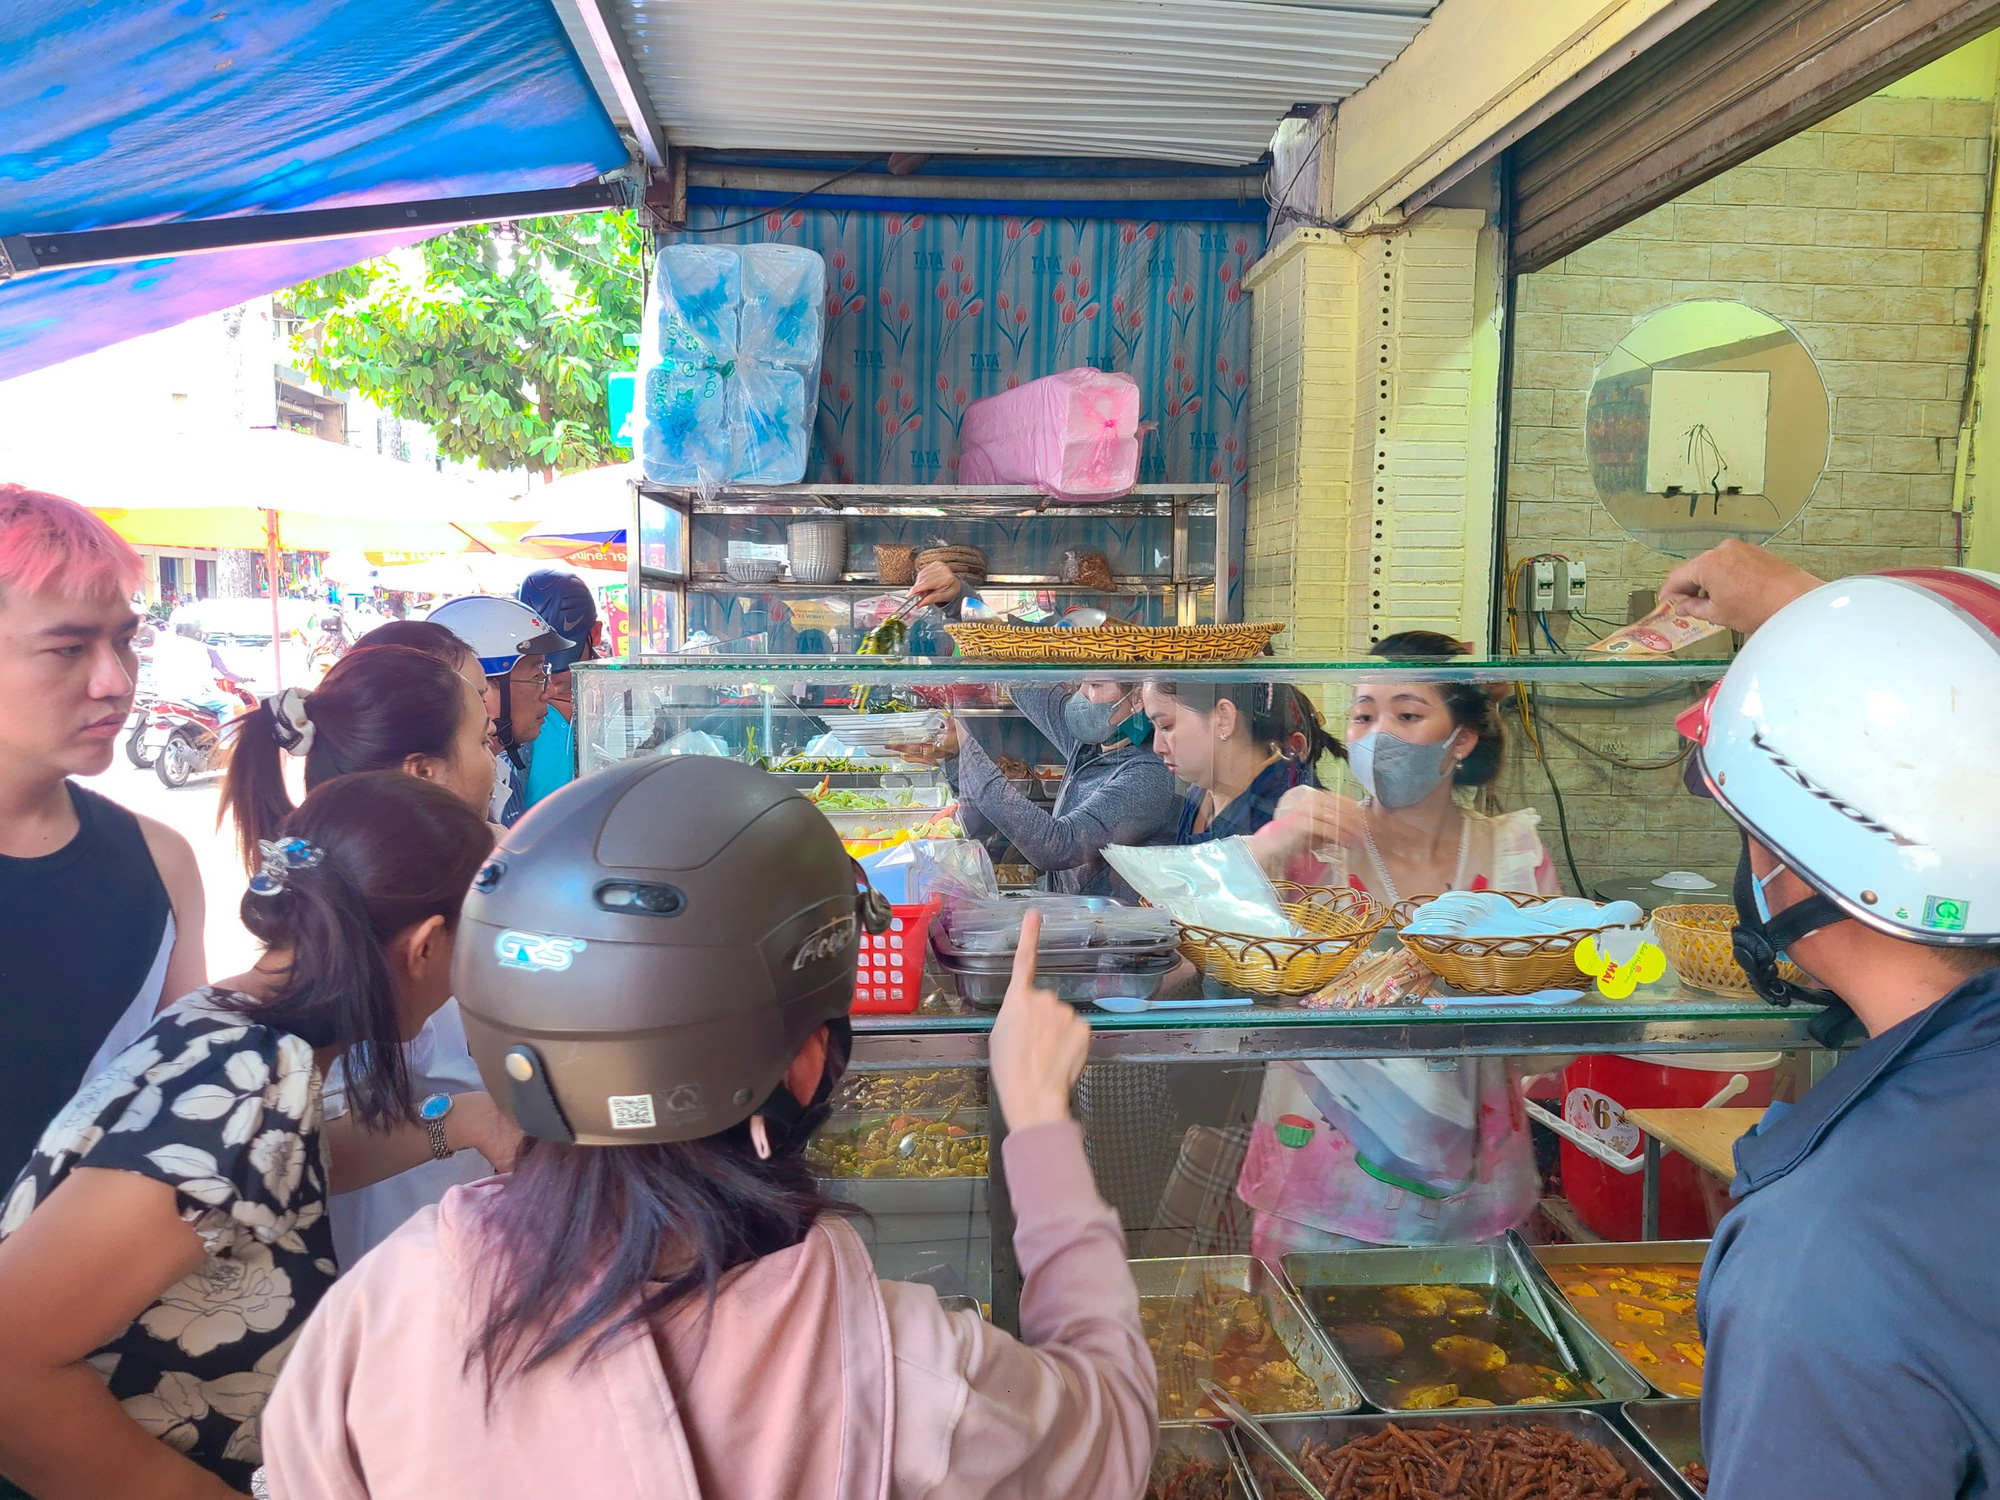 Một quán ăn chay trên đường Nguyễn Huy Tự (quận 1) kín khách từ trong ra ngoài, thực khách phải đợi đến 5 - 10 phút để được phục vụ - Ảnh: NHẬT XUÂN